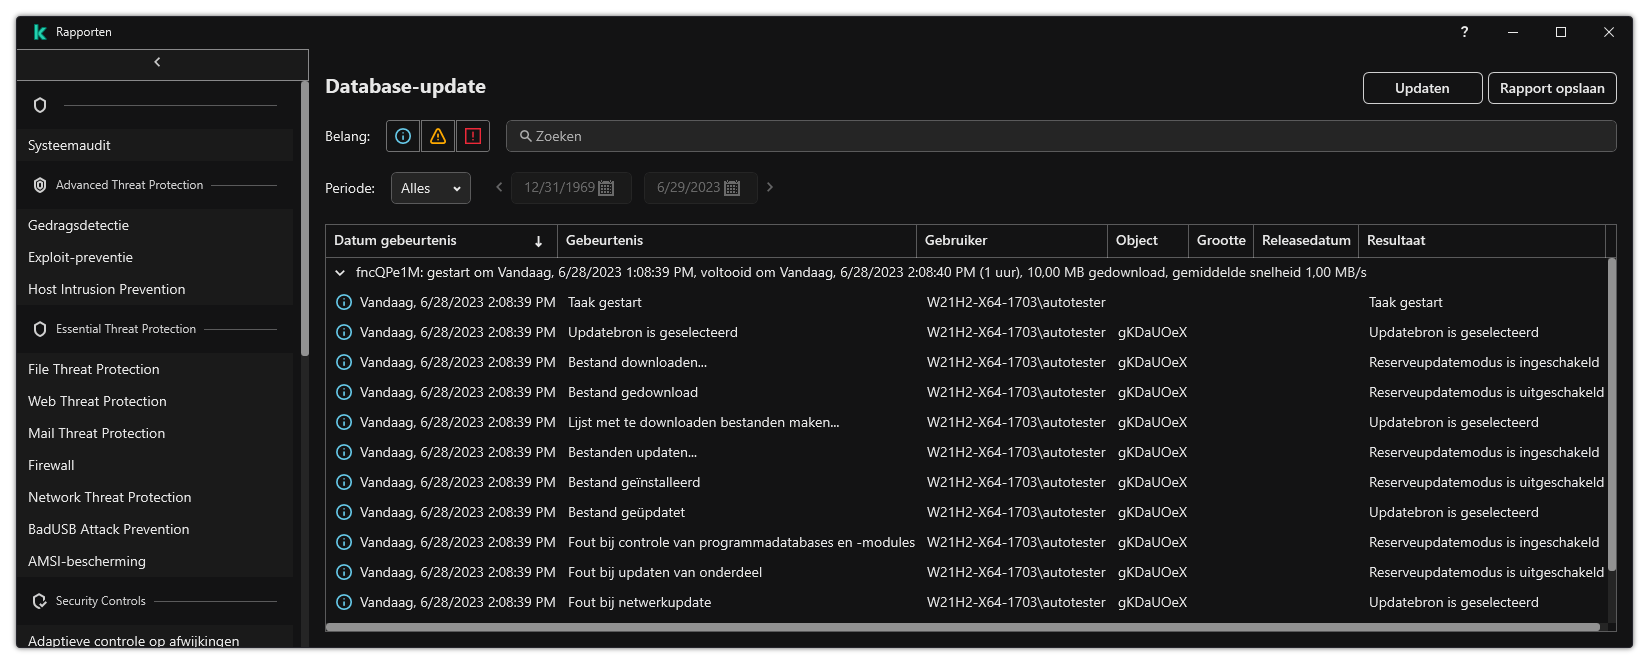 Een venster met de lijst van evenementen in het rapport. De gebruiker kan gebeurtenissen filteren/sorteren en rapporten opslaan in een bestand.